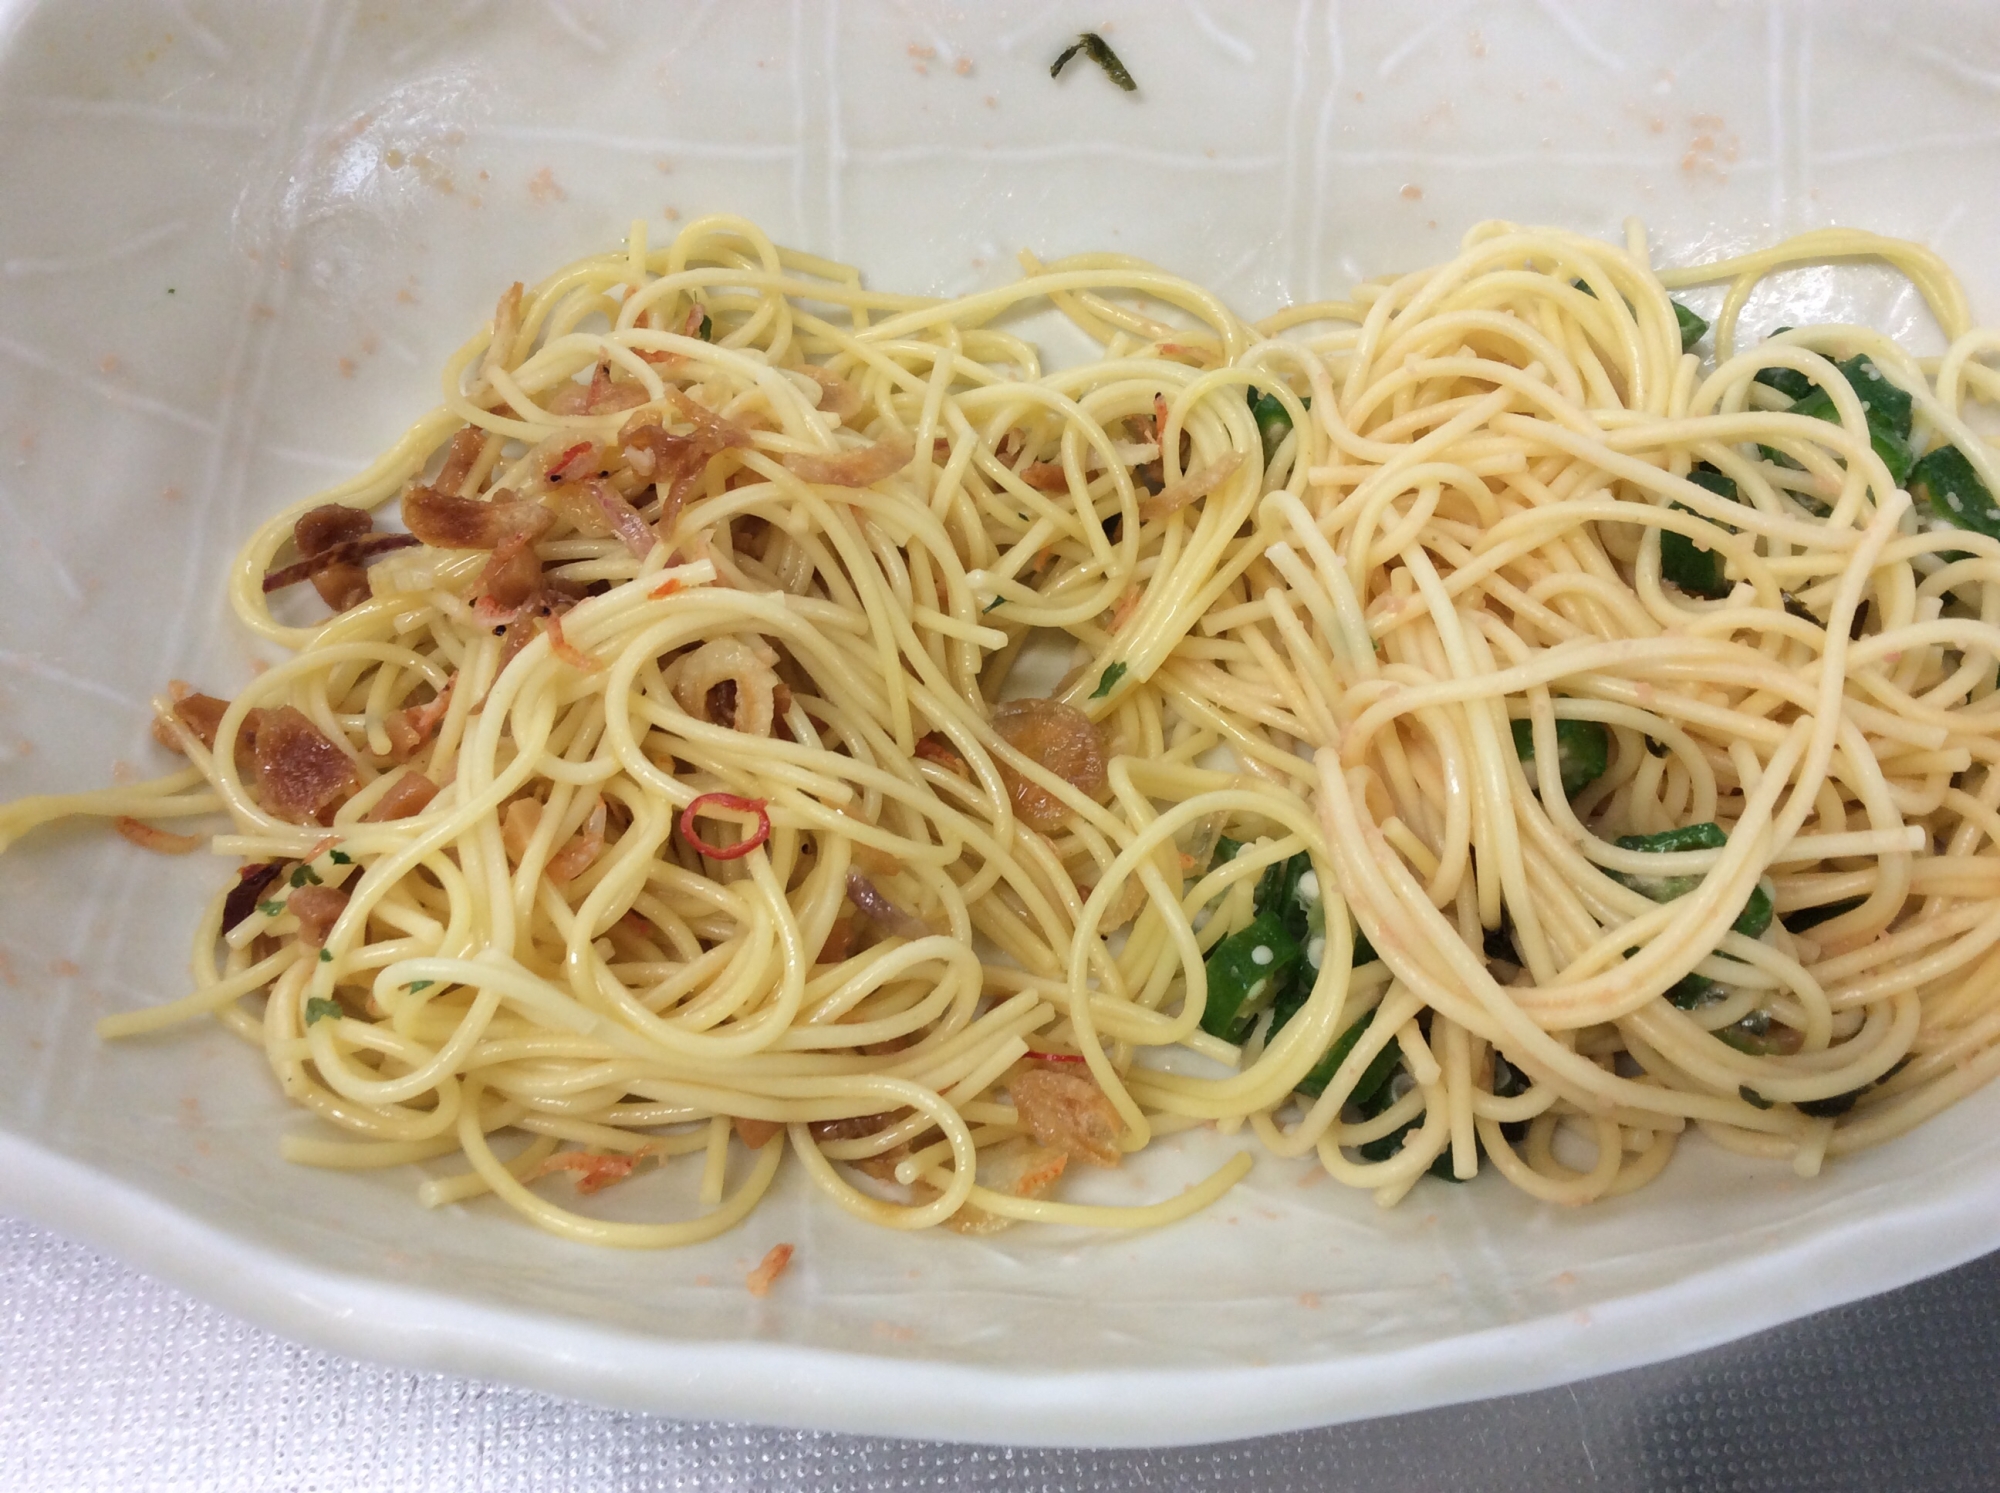 オクラと明太マヨネーズのスパゲティ(写真右)